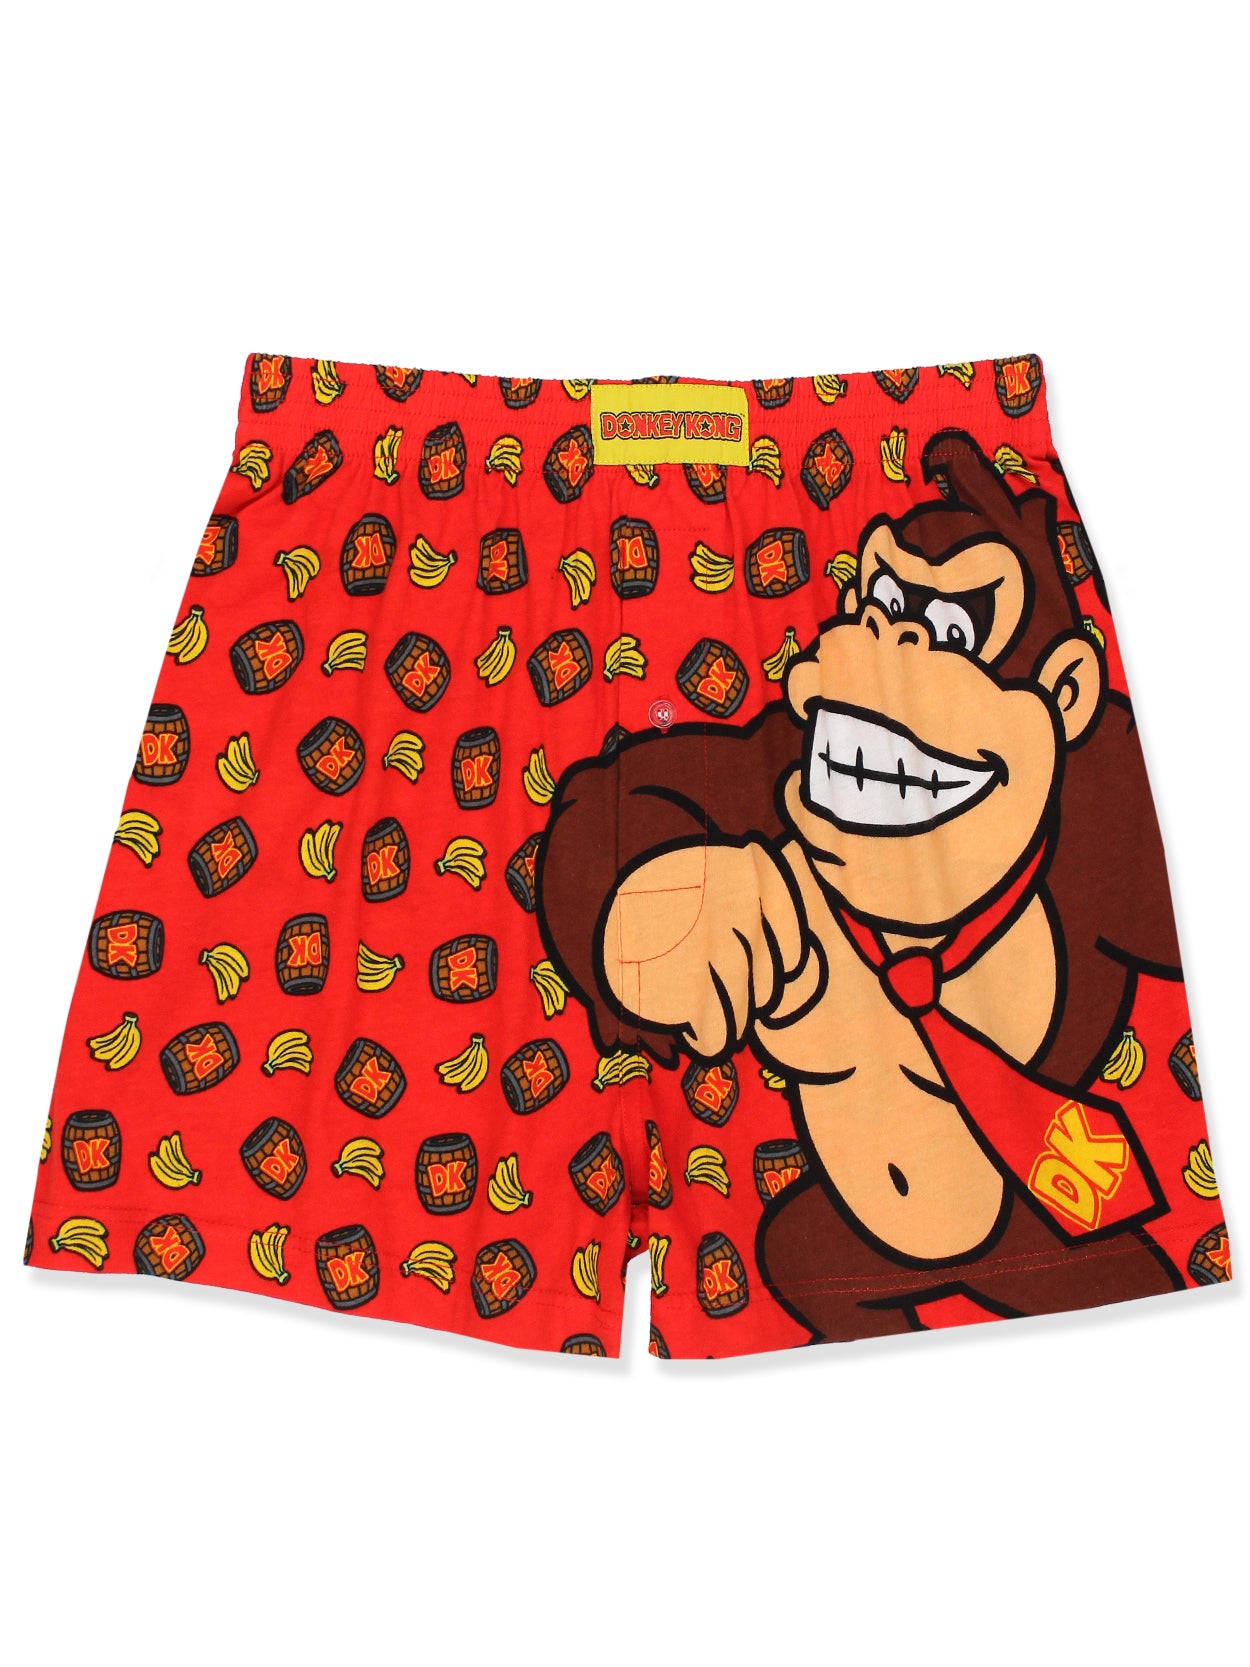 Nintendo - Super Mario Men’s Underwear